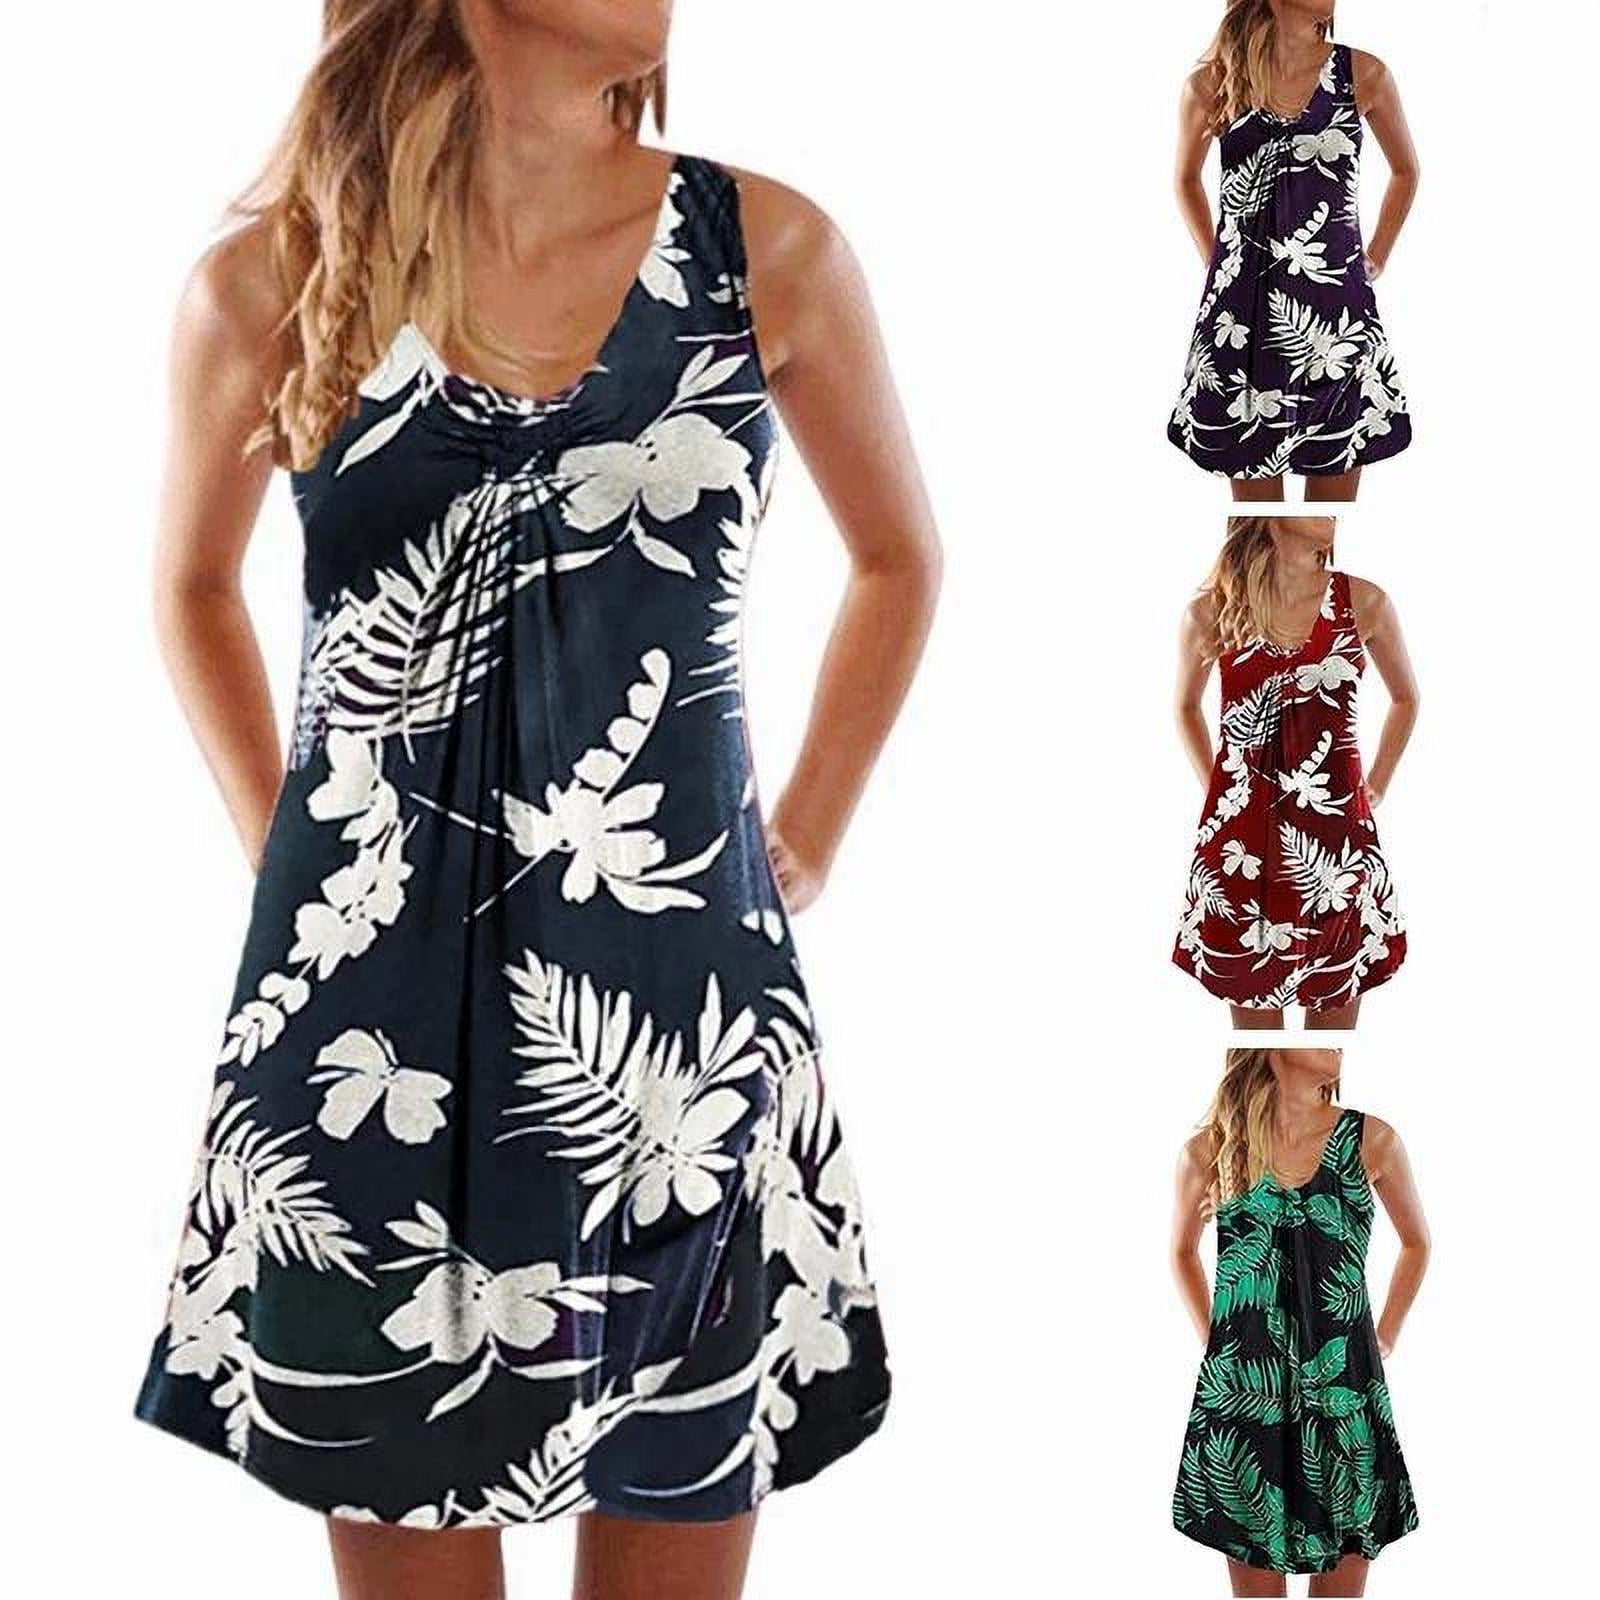 Women Summer O-Neck Print Casual Sleeveless High Waist Pleated Loose Beach Dress Vest Knee-Length Short Dress